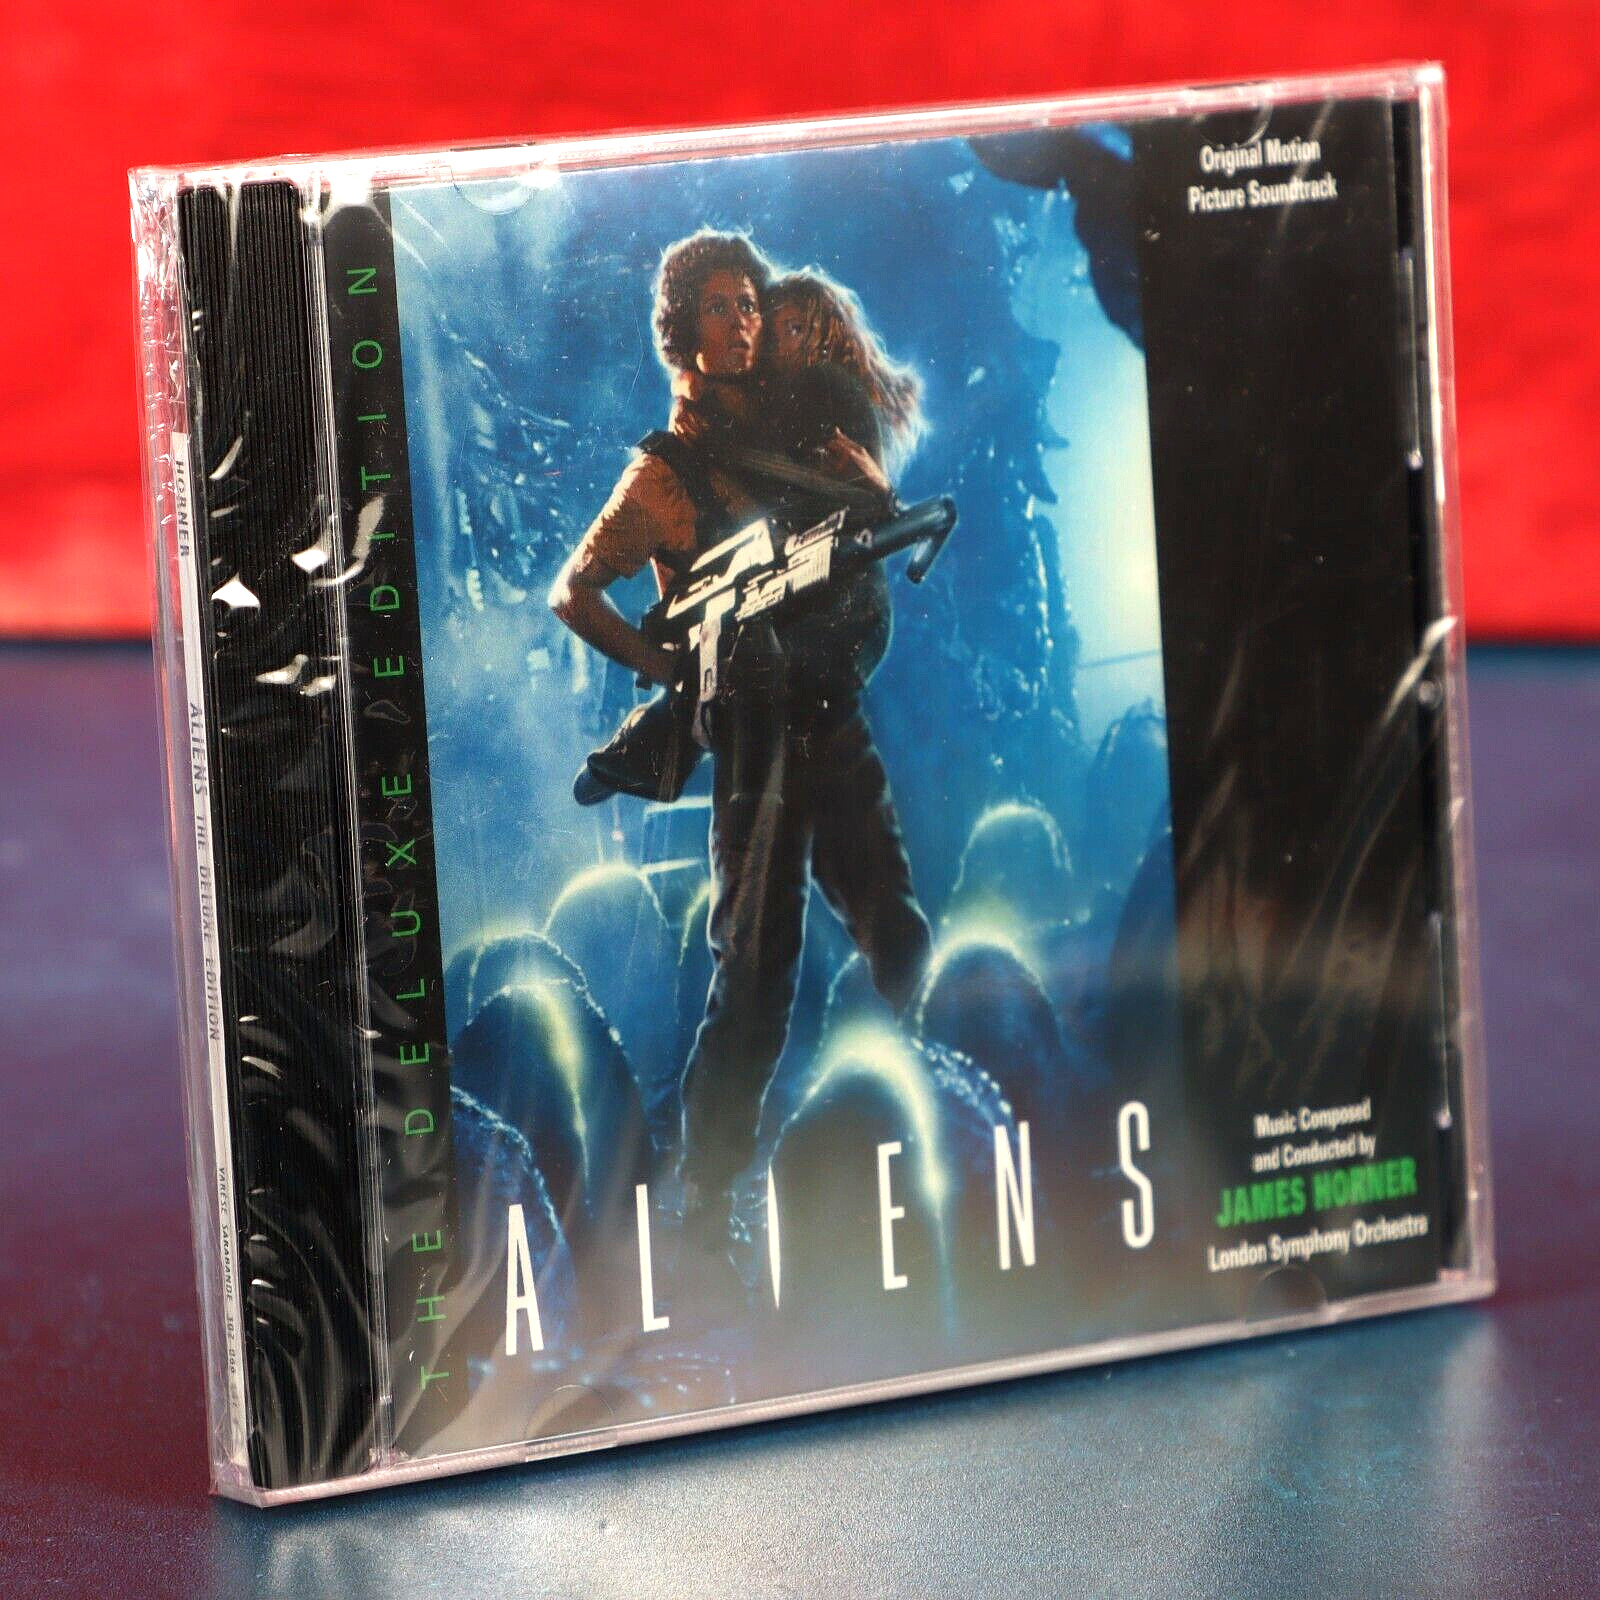 Aliens Deluxe Edition Soundtrack CD James Horner Varese Sarabande 2001 Sealed